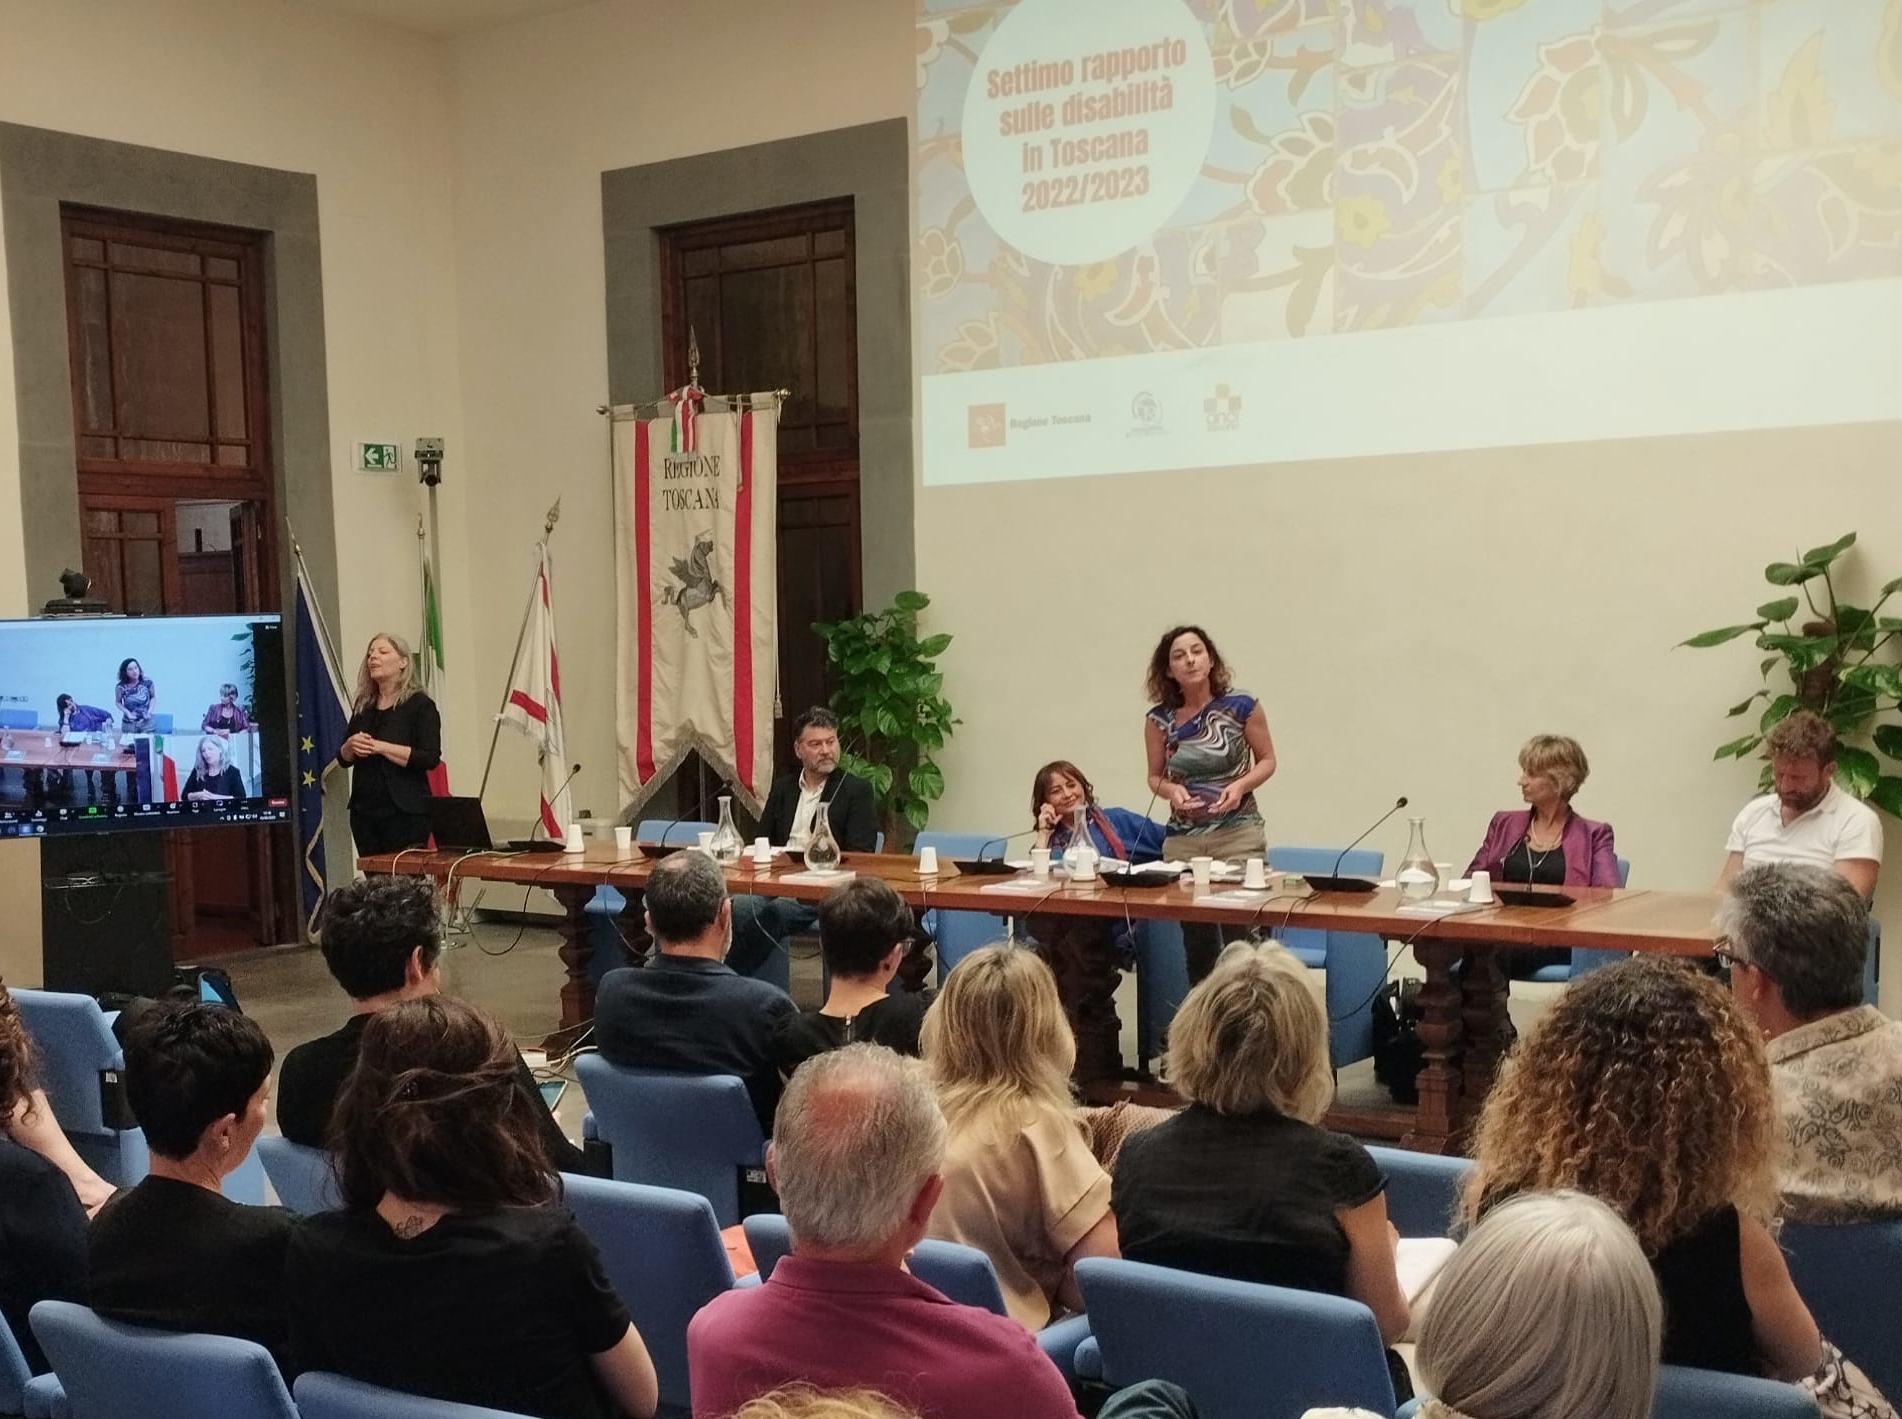 Sono 200mila le persone con disabilità in Toscana: presentato il VII rapporto